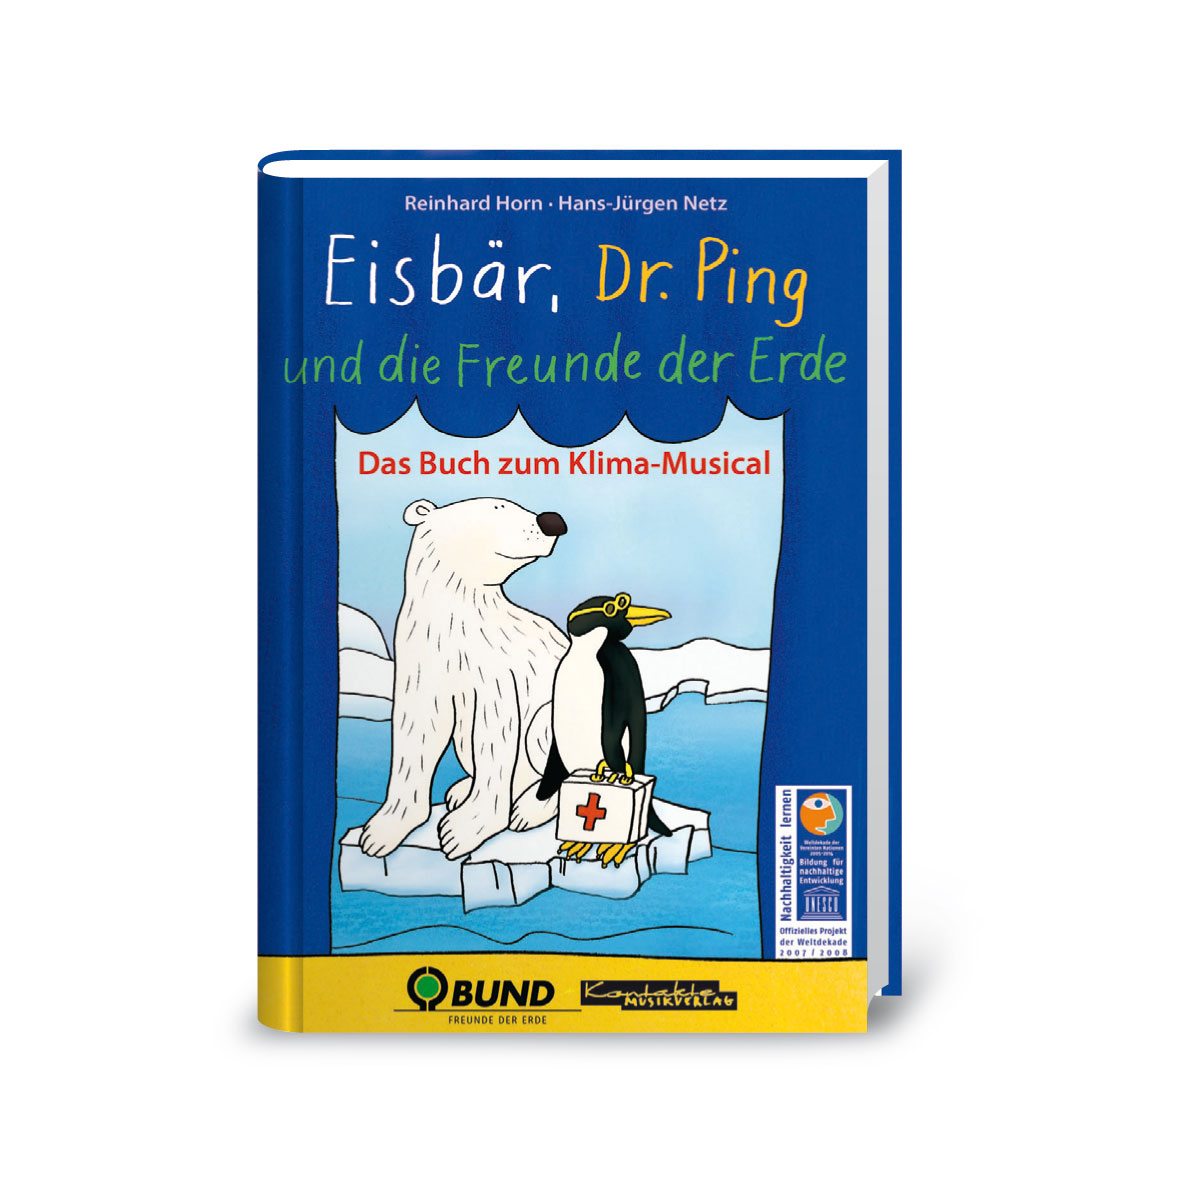 Eisbär, Dr. Ping und die Freunde der Erde